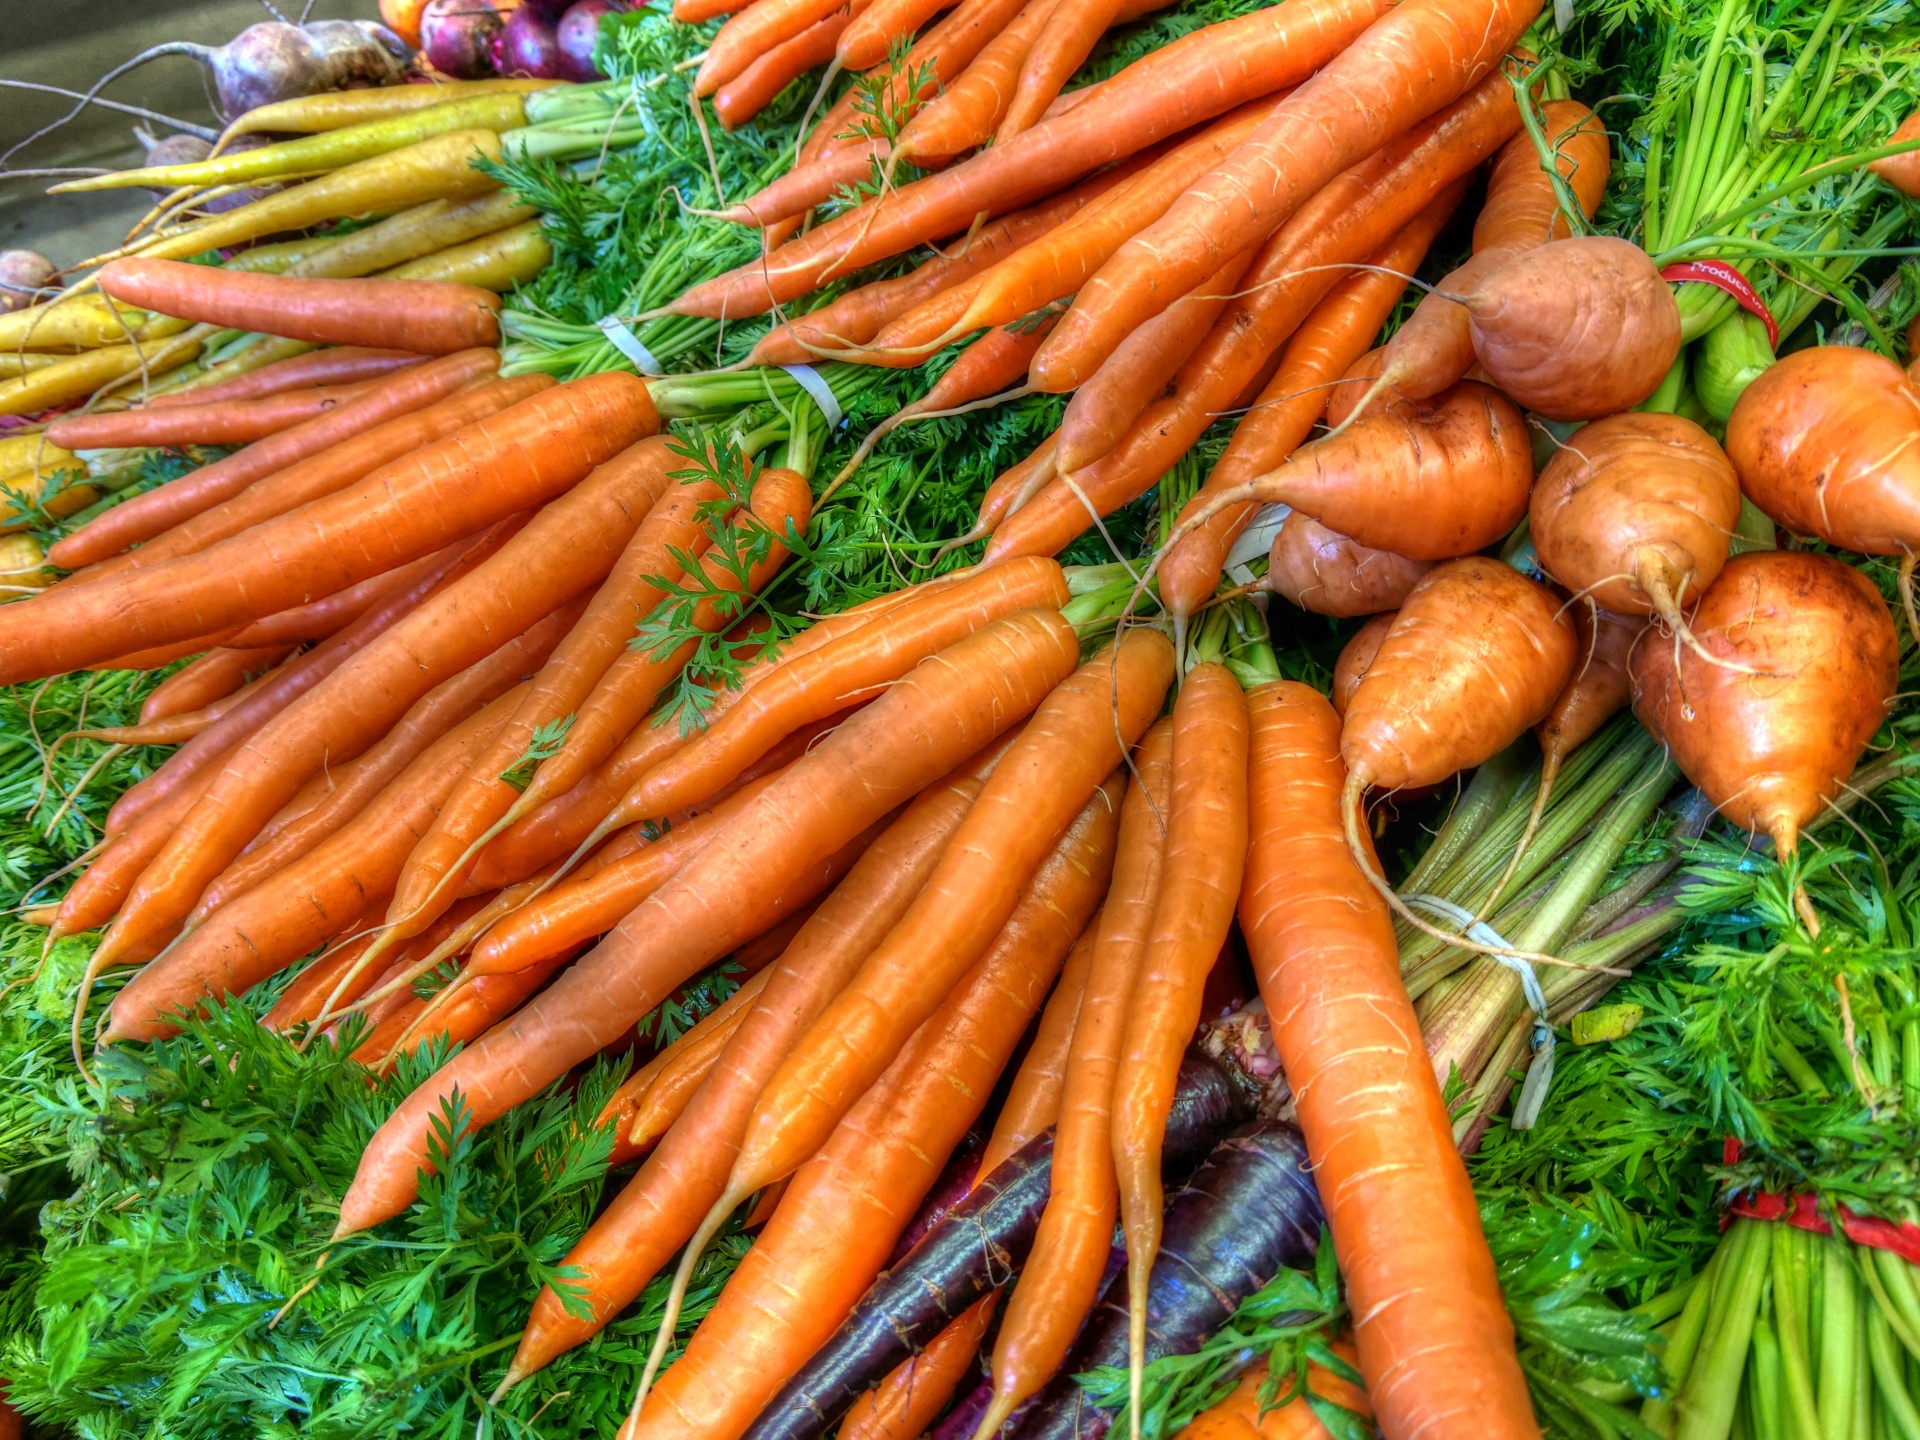 Download free photo of Carrot,моркови,vegetable,vegan,здраве - from needpix.com